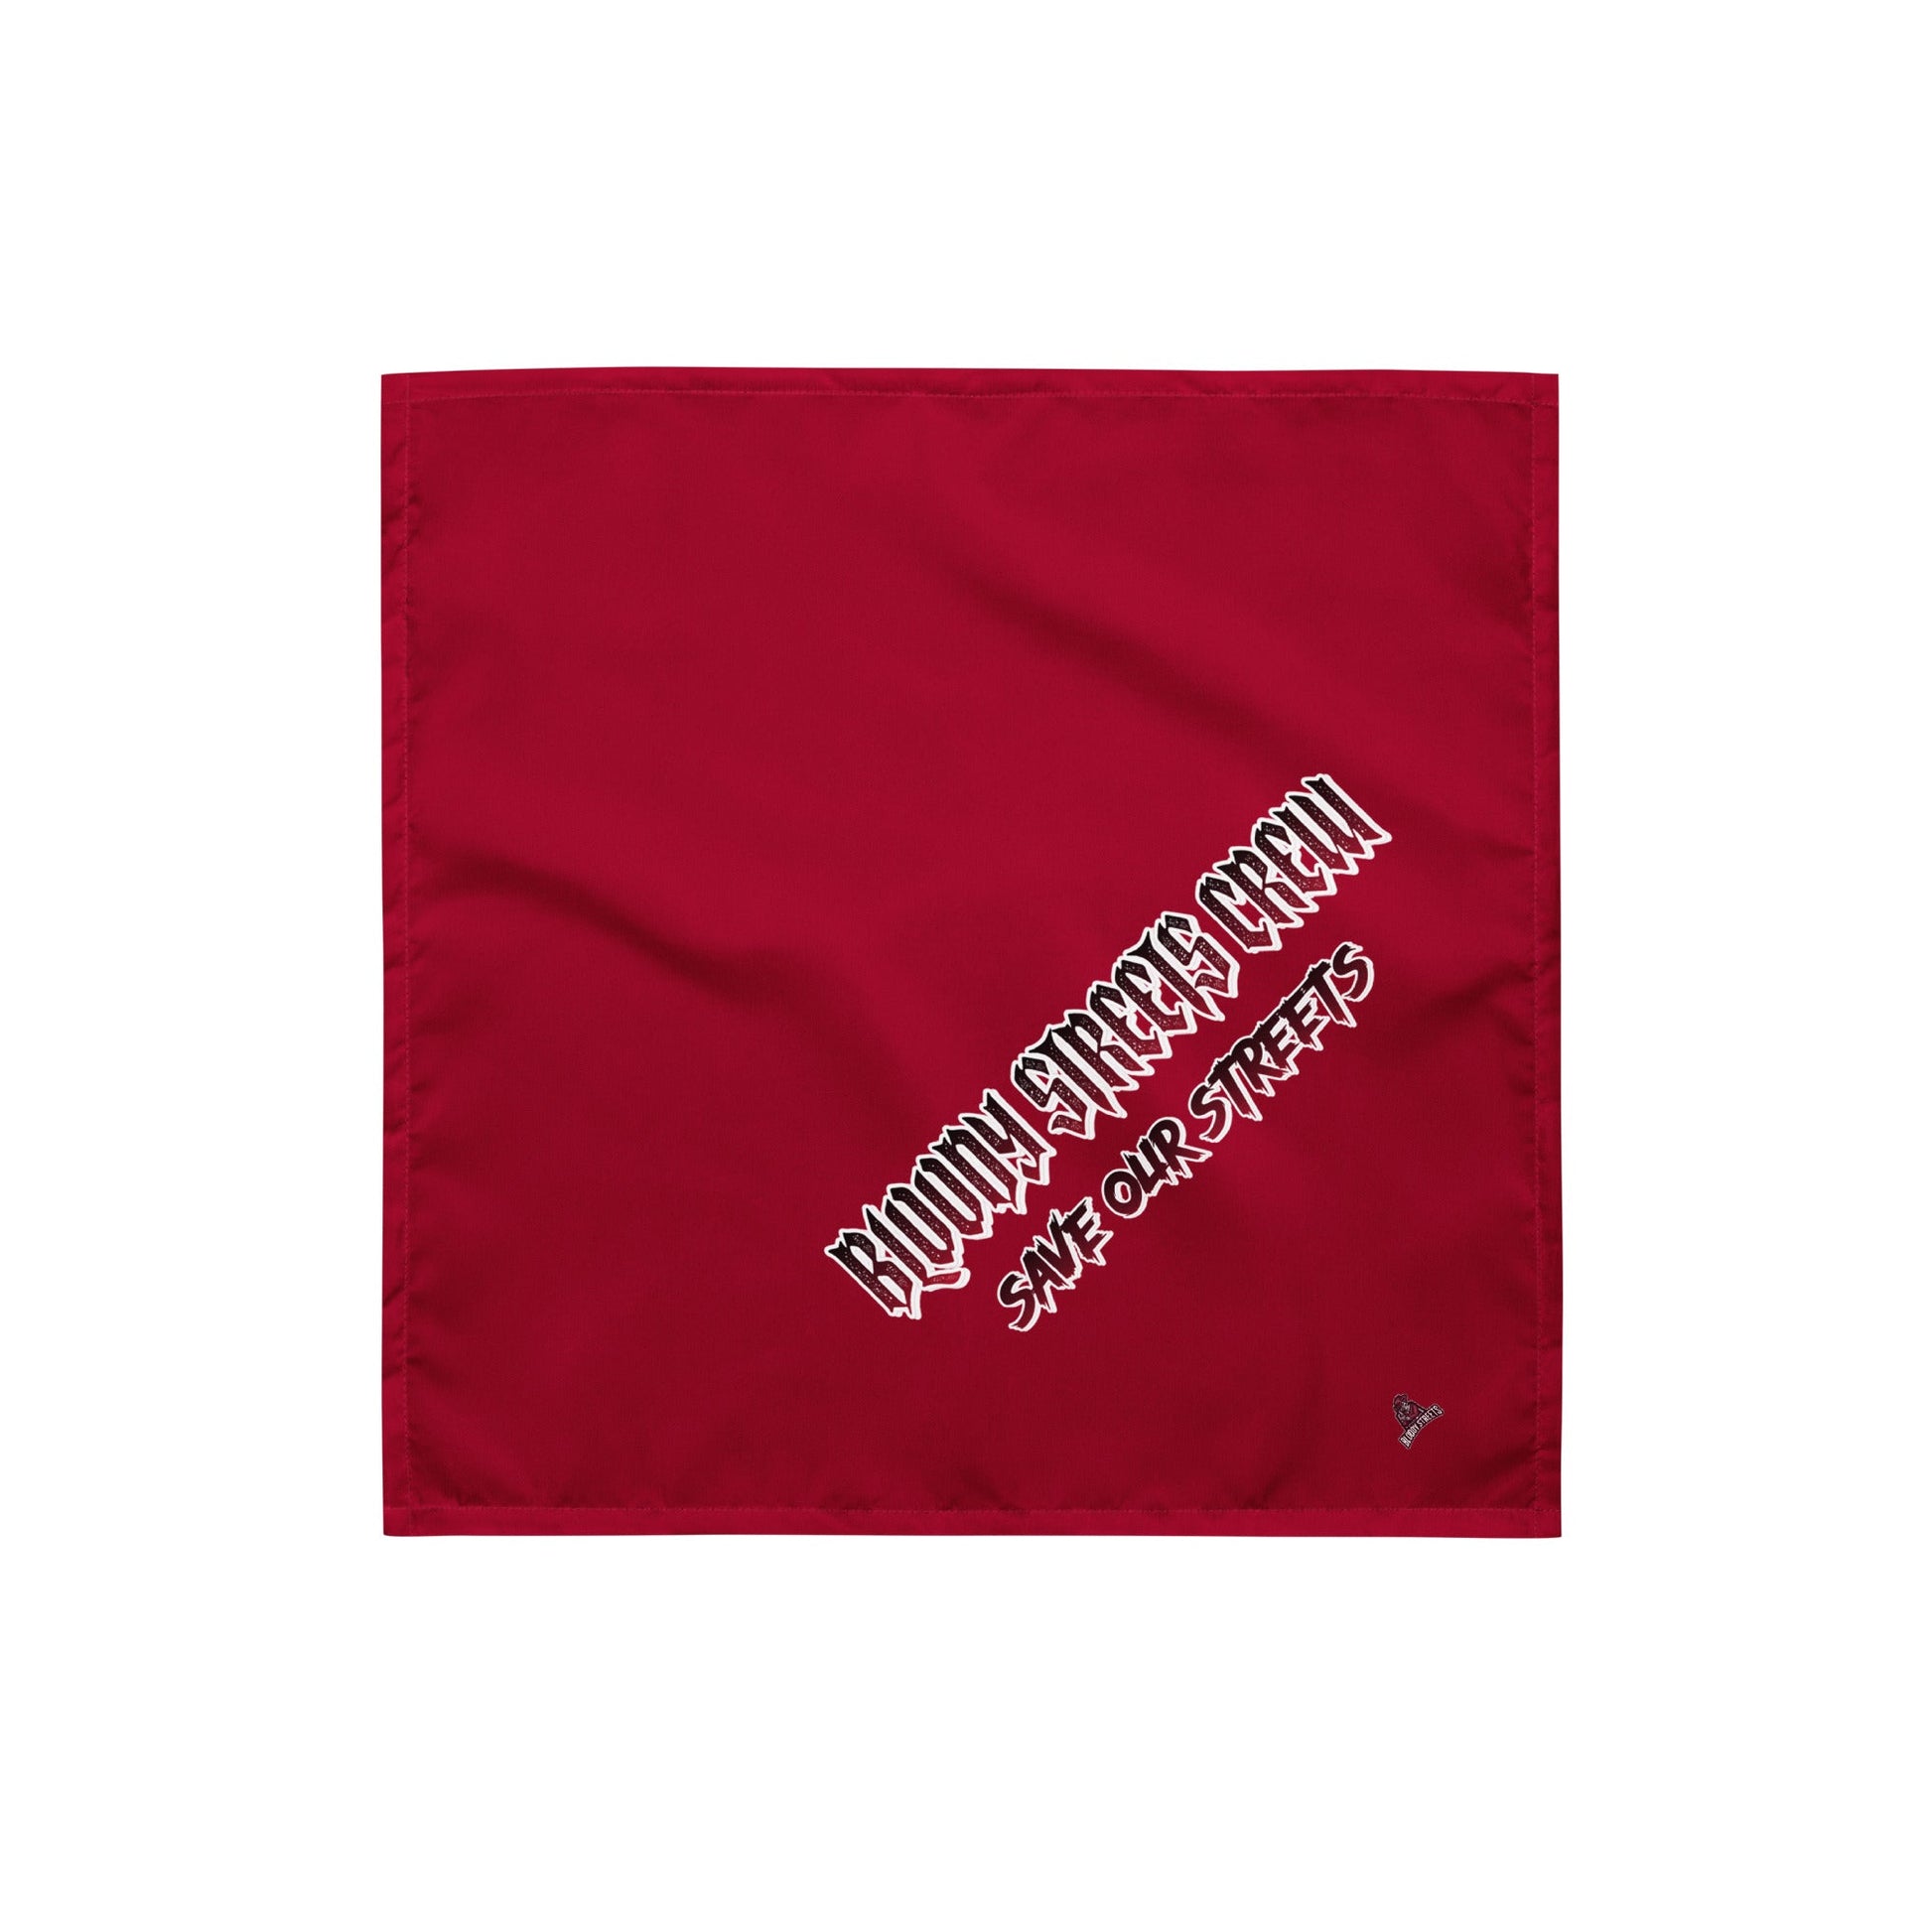 Streetwear Bandana Red - BLOODY-STREETS.DE Streetwear Herren und Damen Hoodies, T-Shirts, Pullis